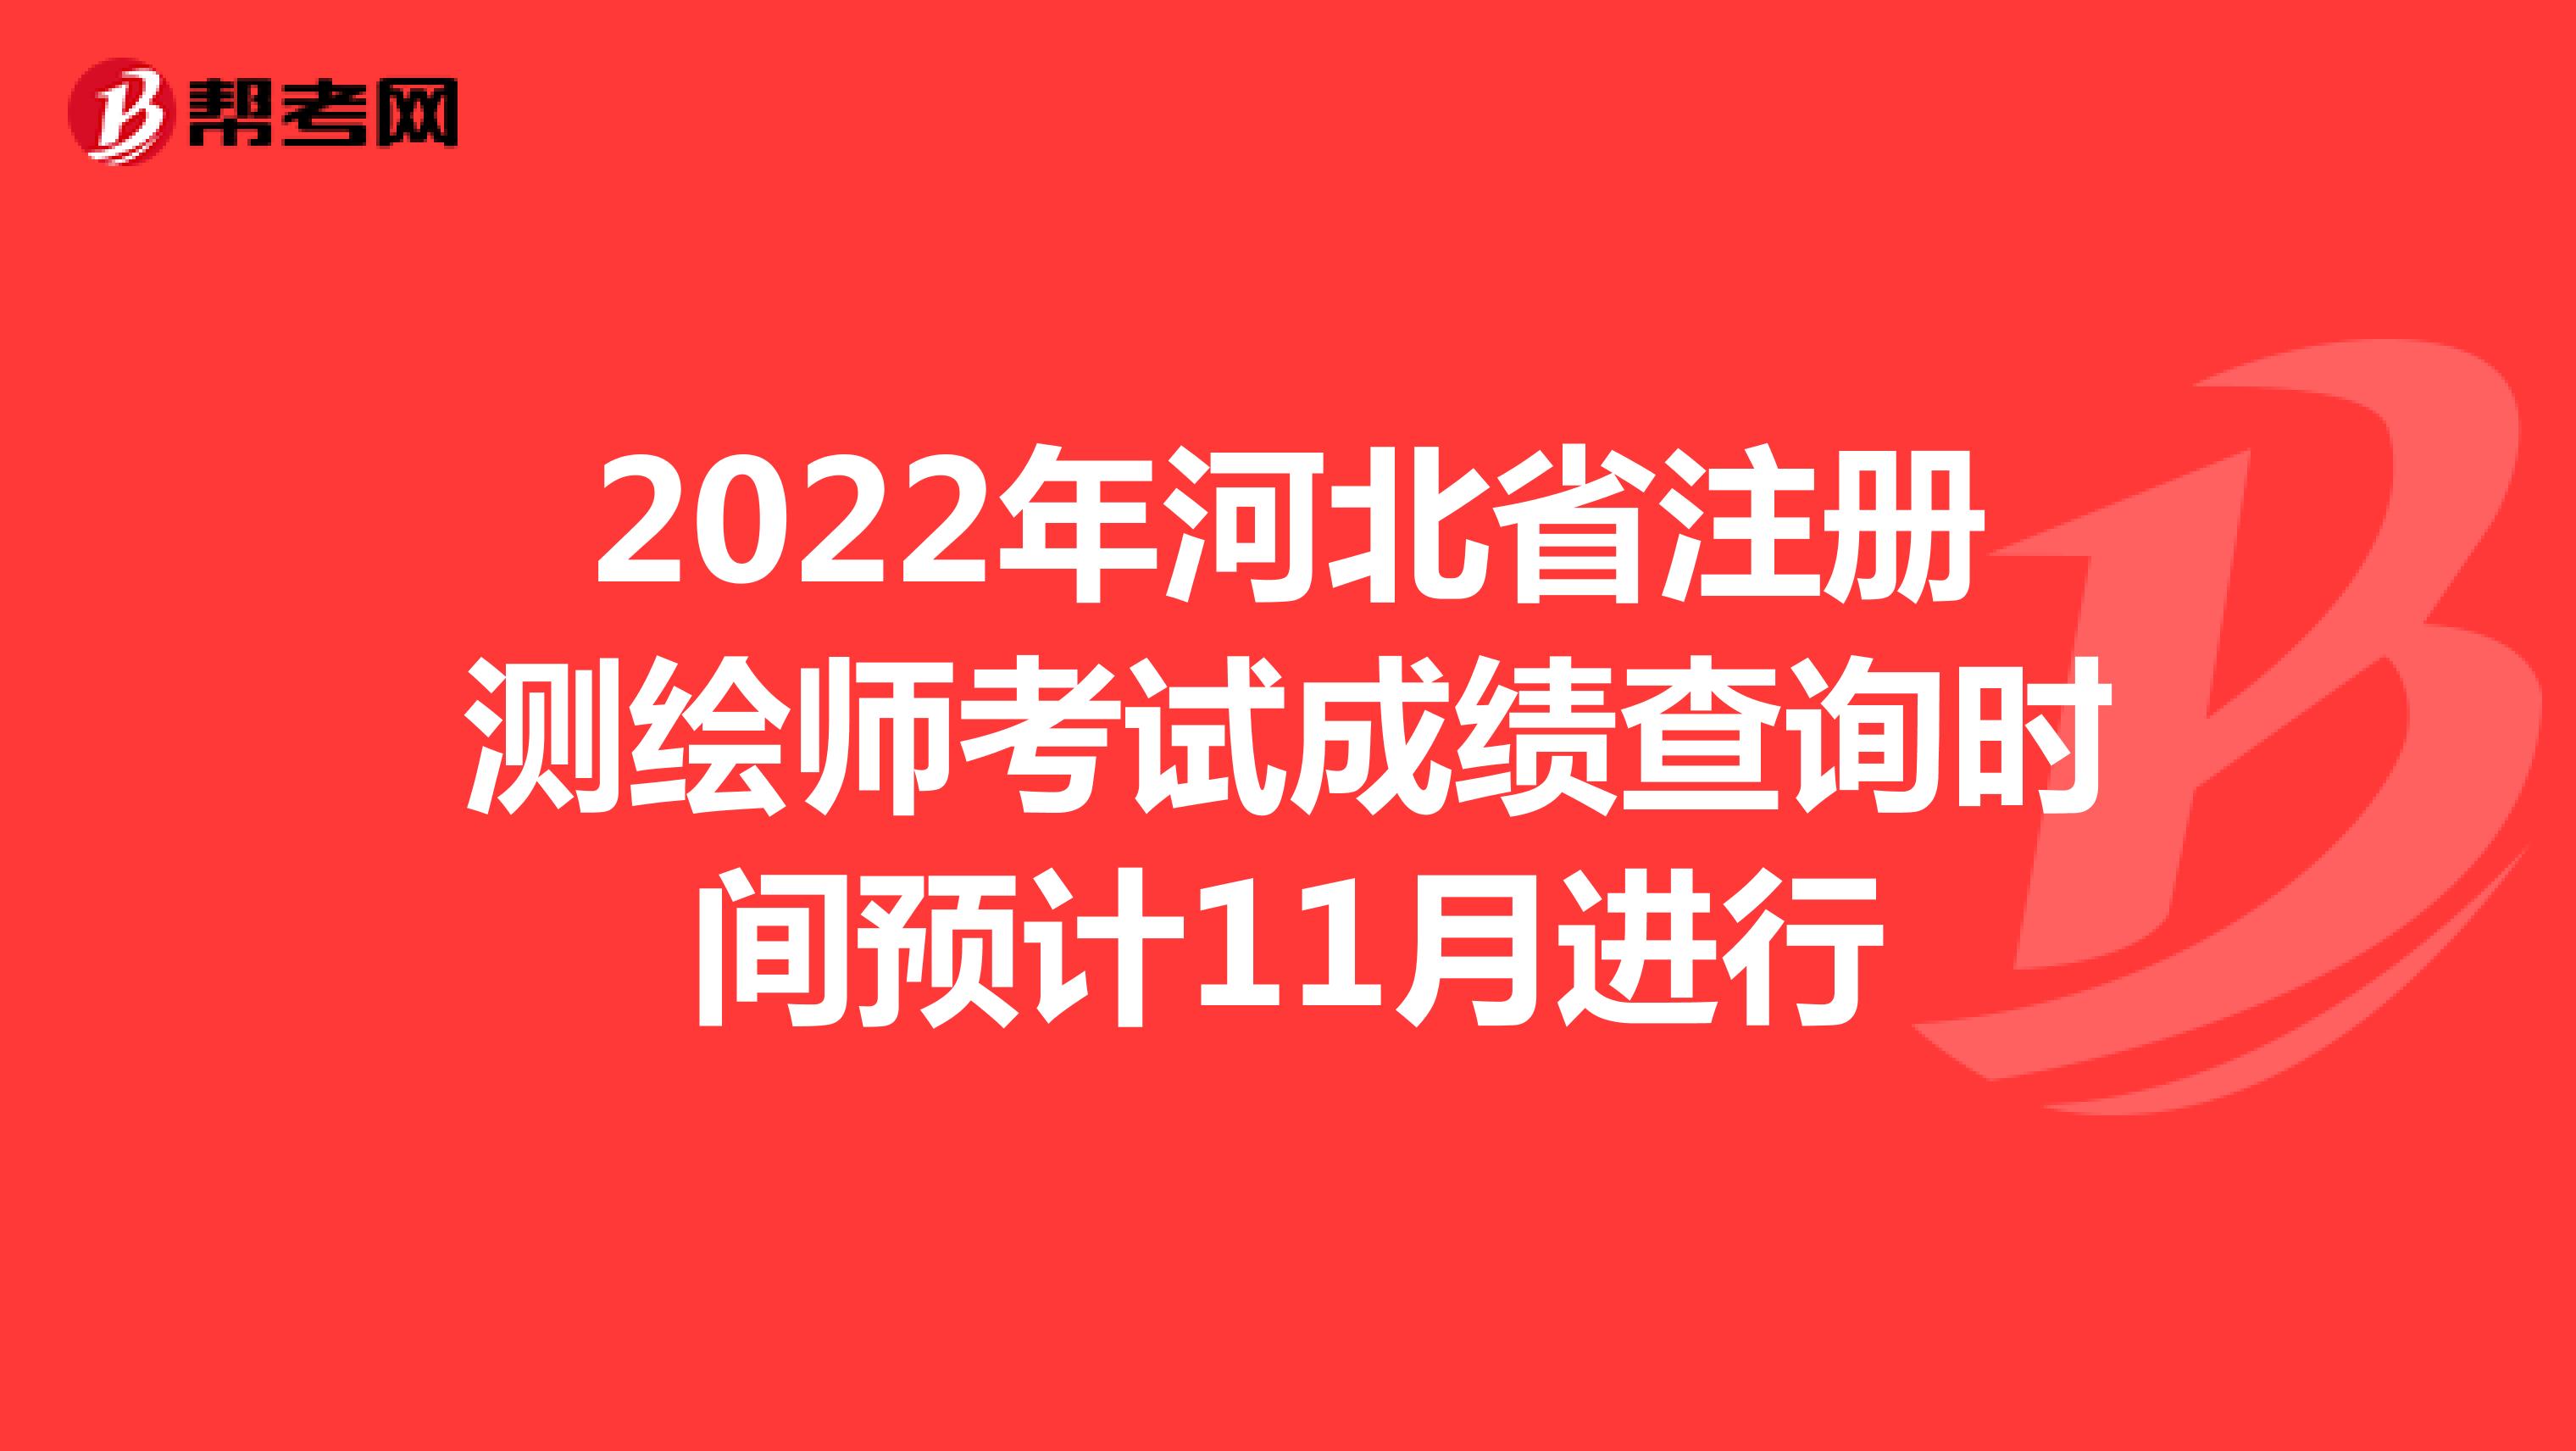 2022年河北省注册测绘师考试成绩查询时间预计11月进行